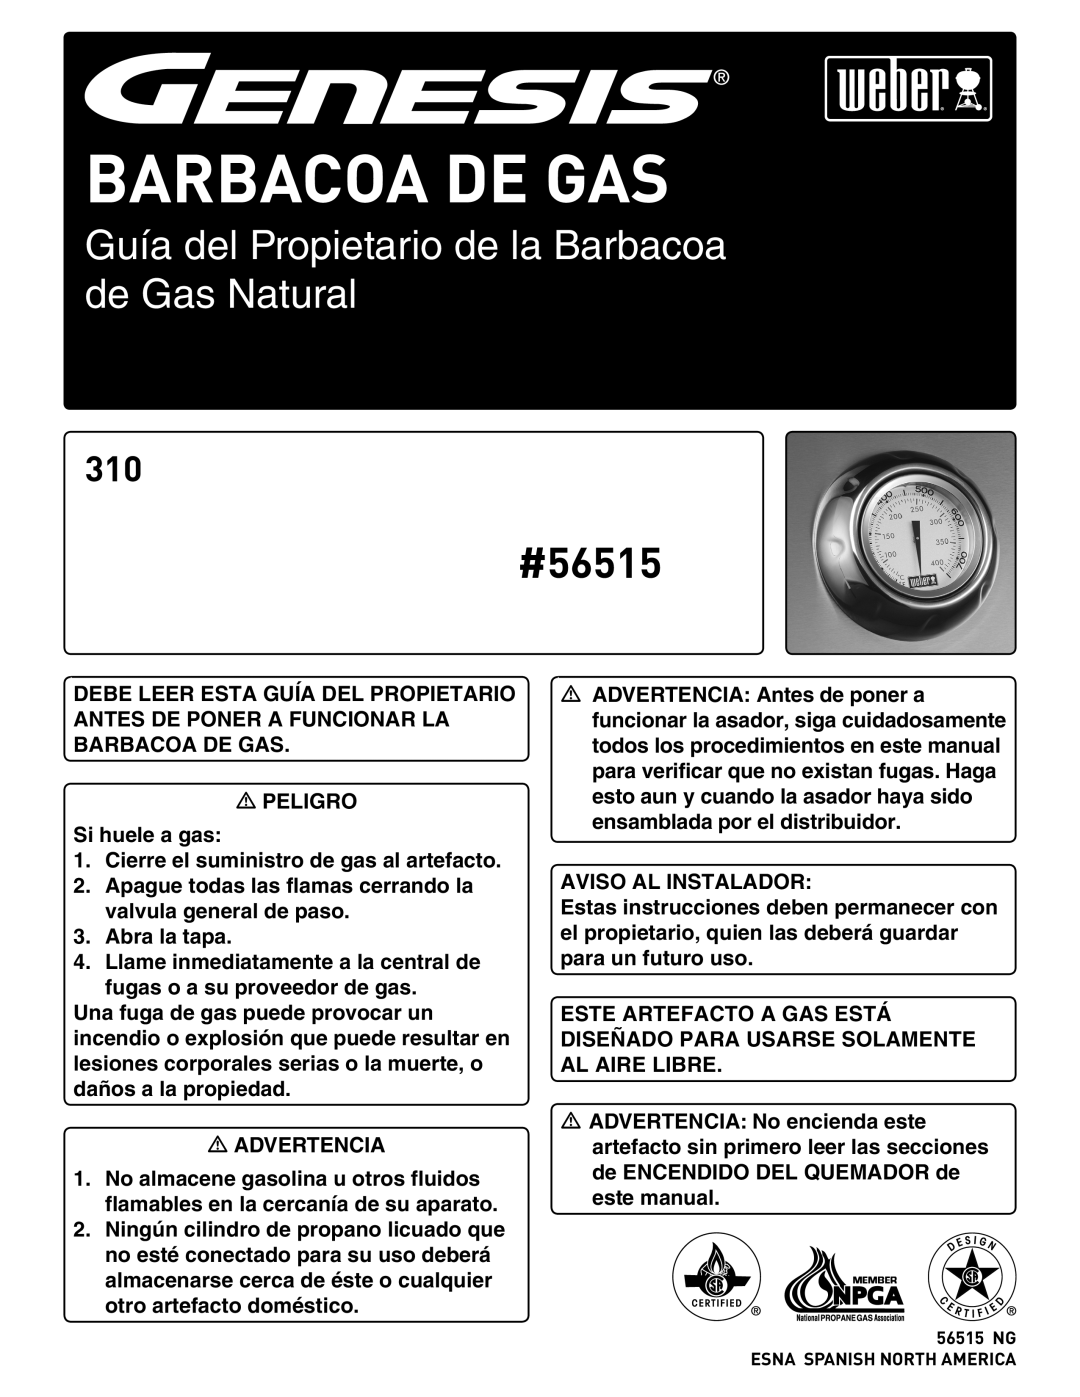 Weber manual Barbacoa De Gas, Guía del Propietario de la Barbacoa de Gas Natural, #56515 